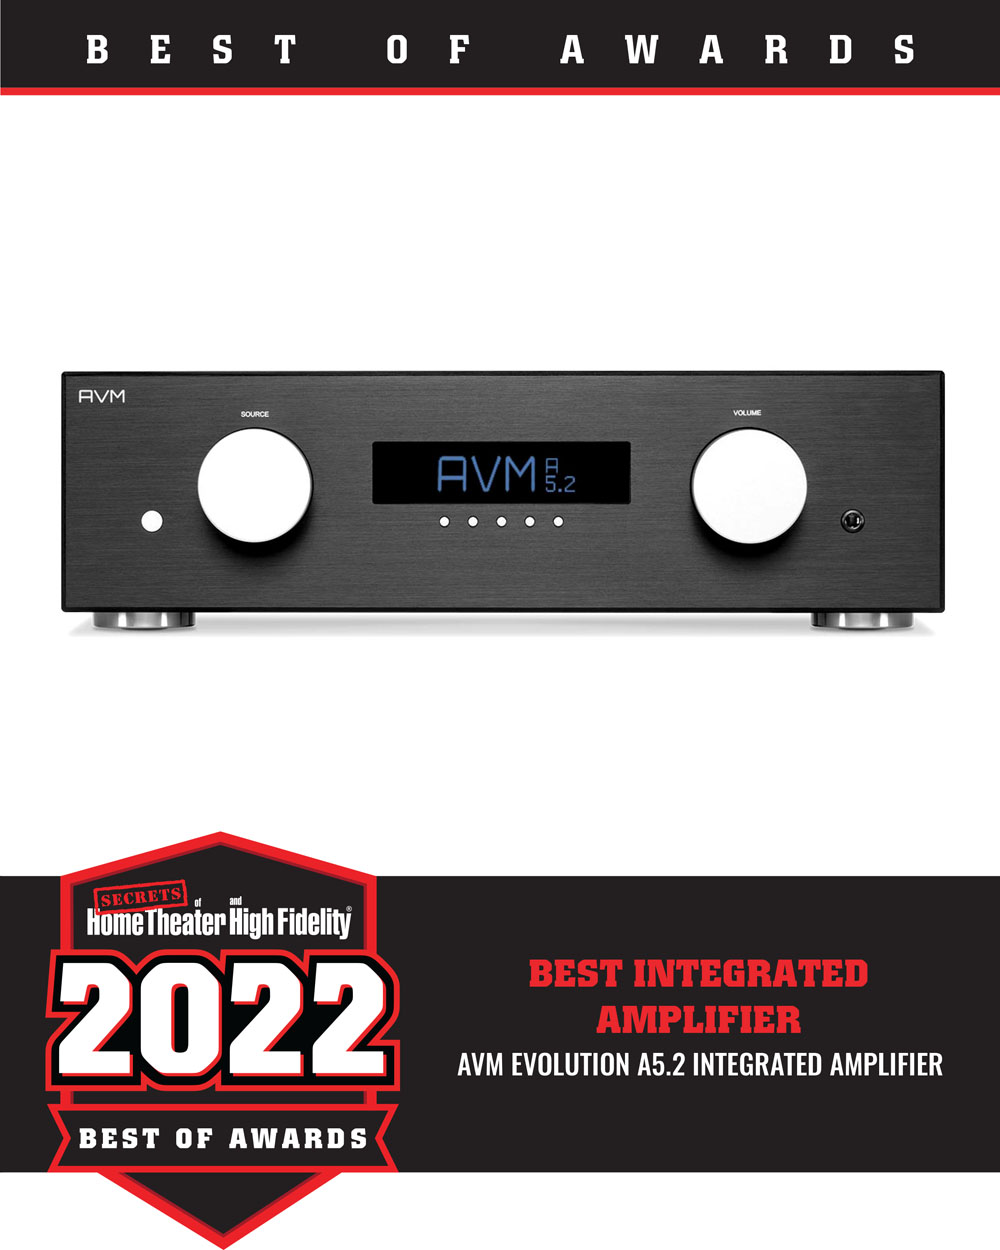 AVM Evolution A5.2 Integrated Amplifier Best of 2022 Award